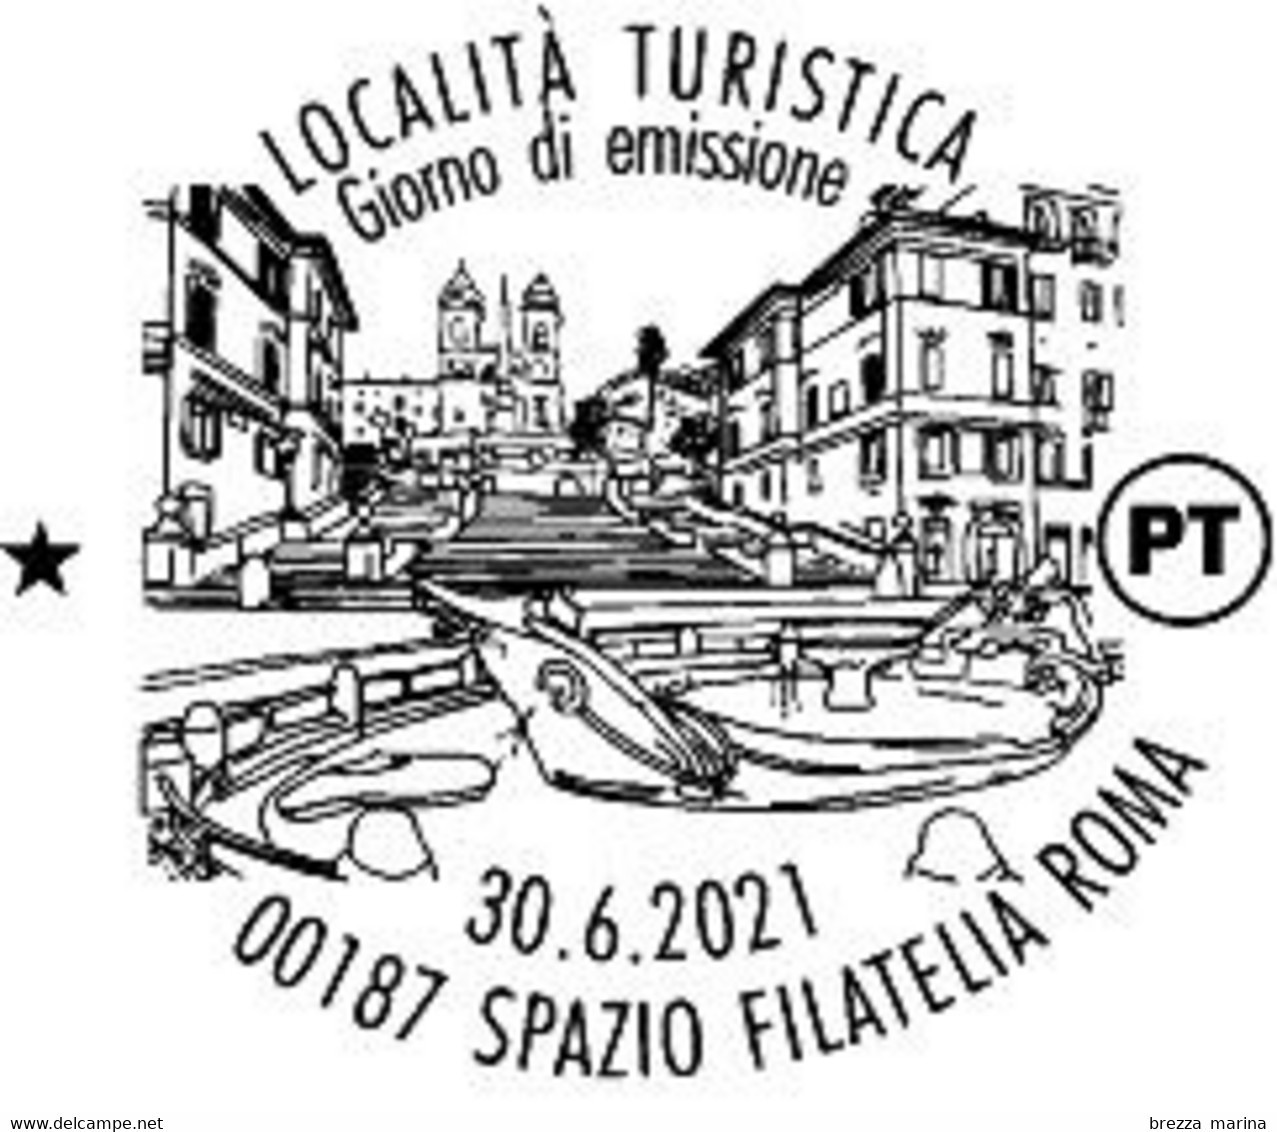 ITALIA - Usato - 2021 - Turismo - L’Italia Riparte – Roma – Piazza Di Spagna, Fontana Barcaccia, Trinità Monti - 2021-...: Oblitérés